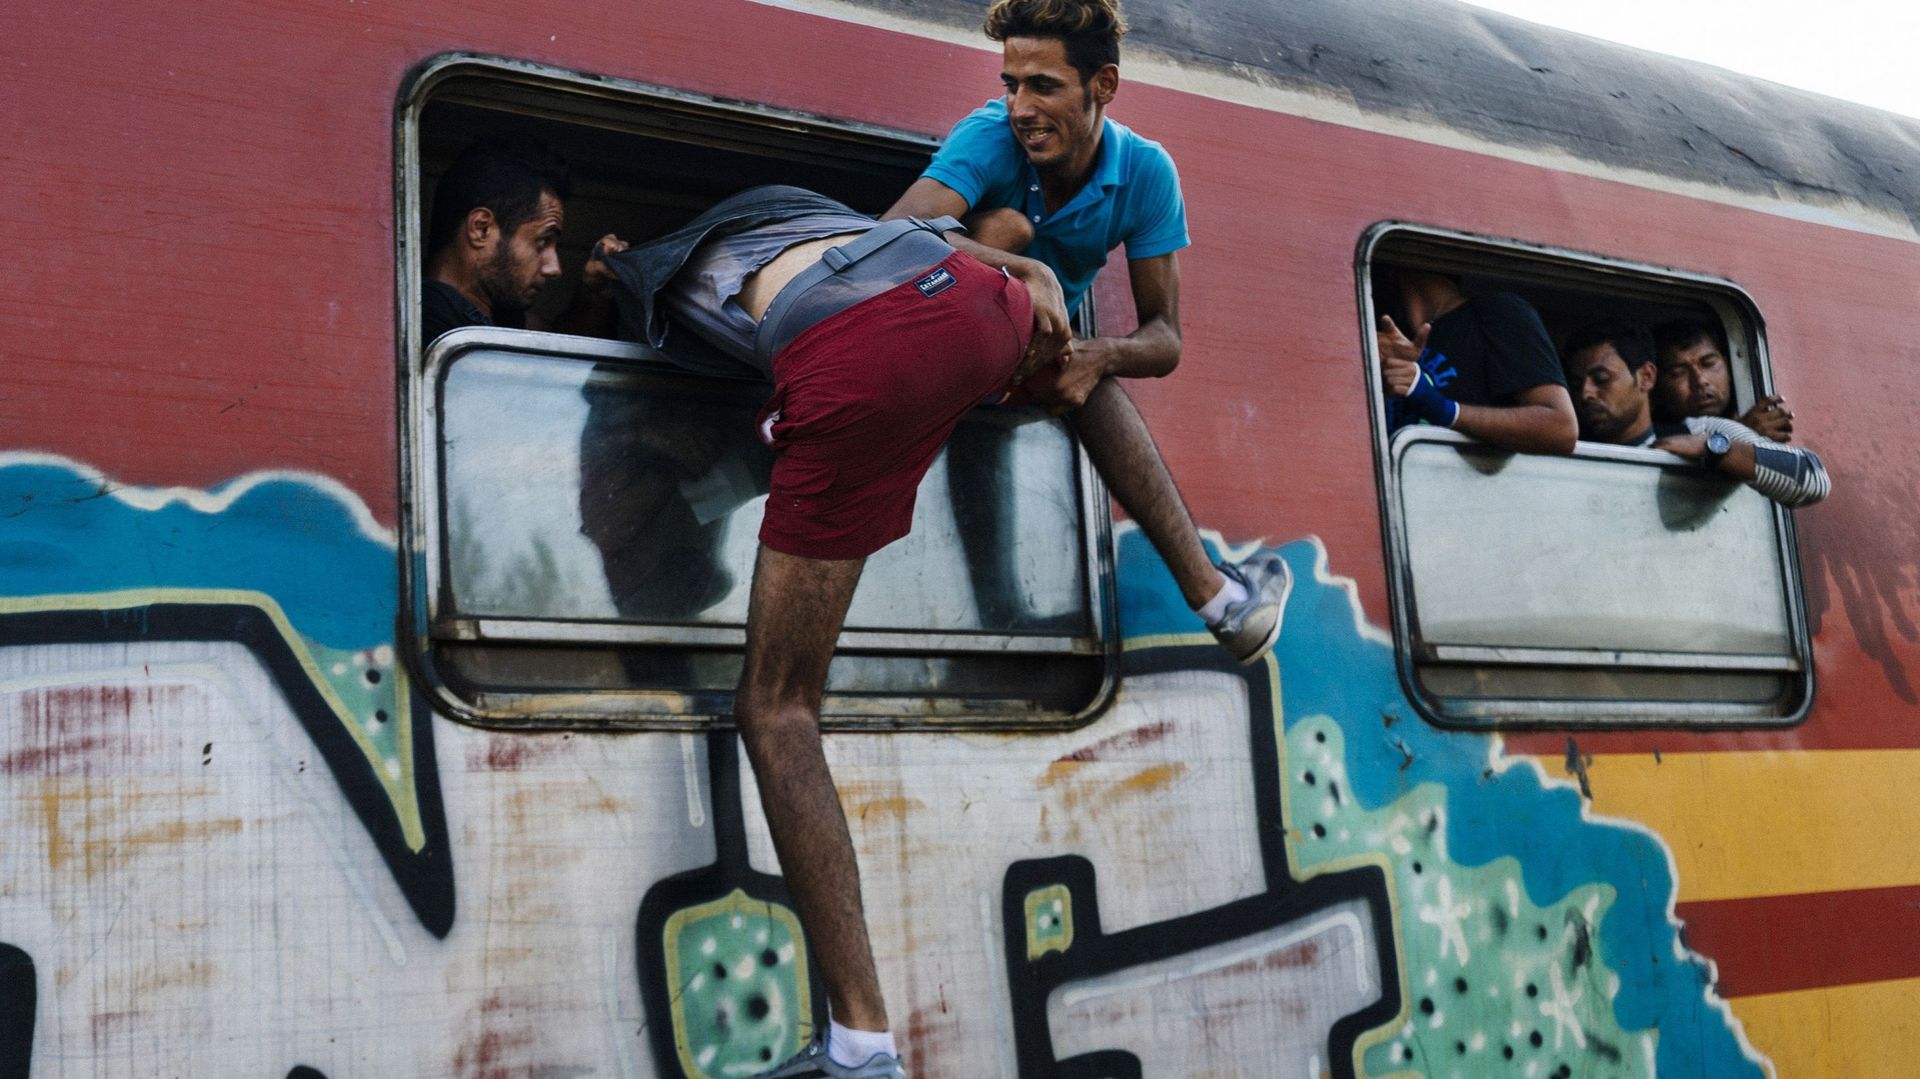 Macédoine, les trains pris d'assaut par les migrants